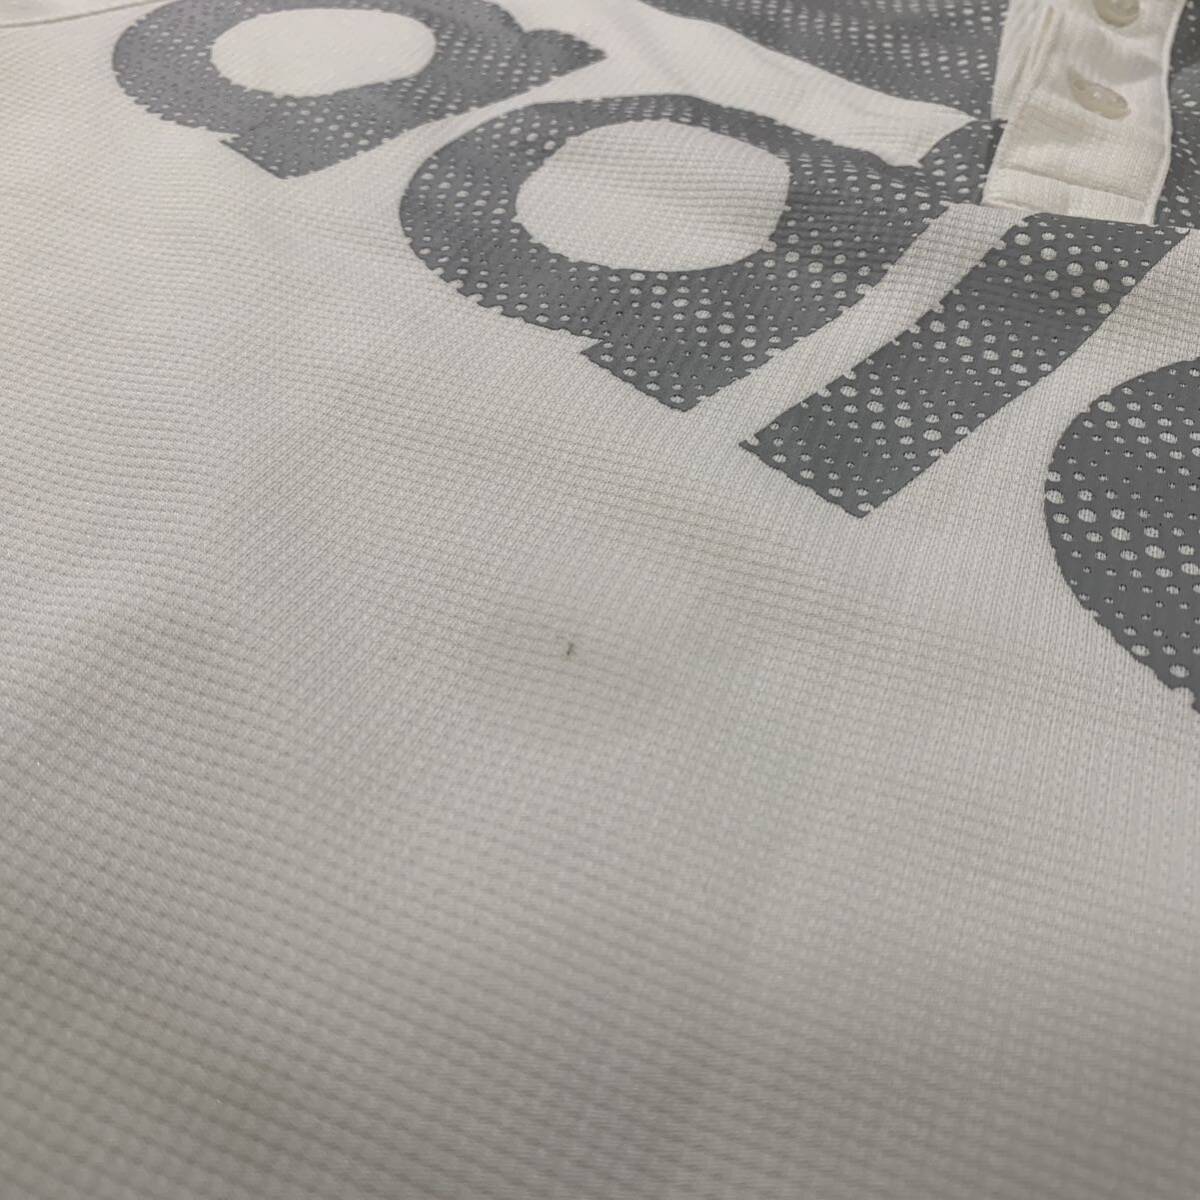 【adidas GOLFアディダスゴルフ】半袖 ポロシャツ メンズ デカロゴ サイズO LLサイズ 白 ホワイト ラグランスリーブ ゴルフウェア DRY 速乾